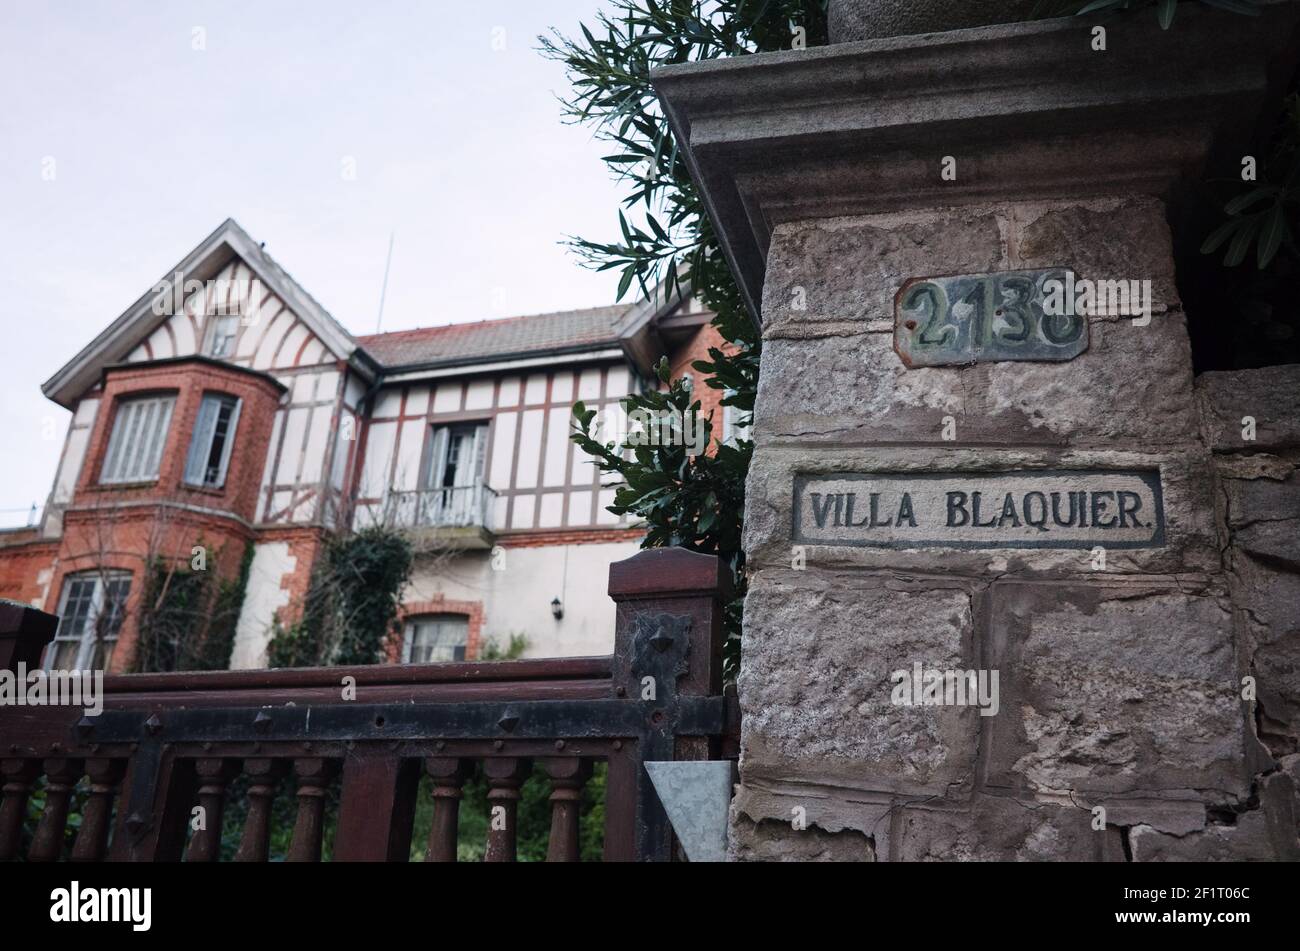 Mar del Plata, Buenos Aires, Argentine - juin 2020 : villa d'été typique. Porte en pierre avec une adresse sur elle et bâtiment historique Banque D'Images